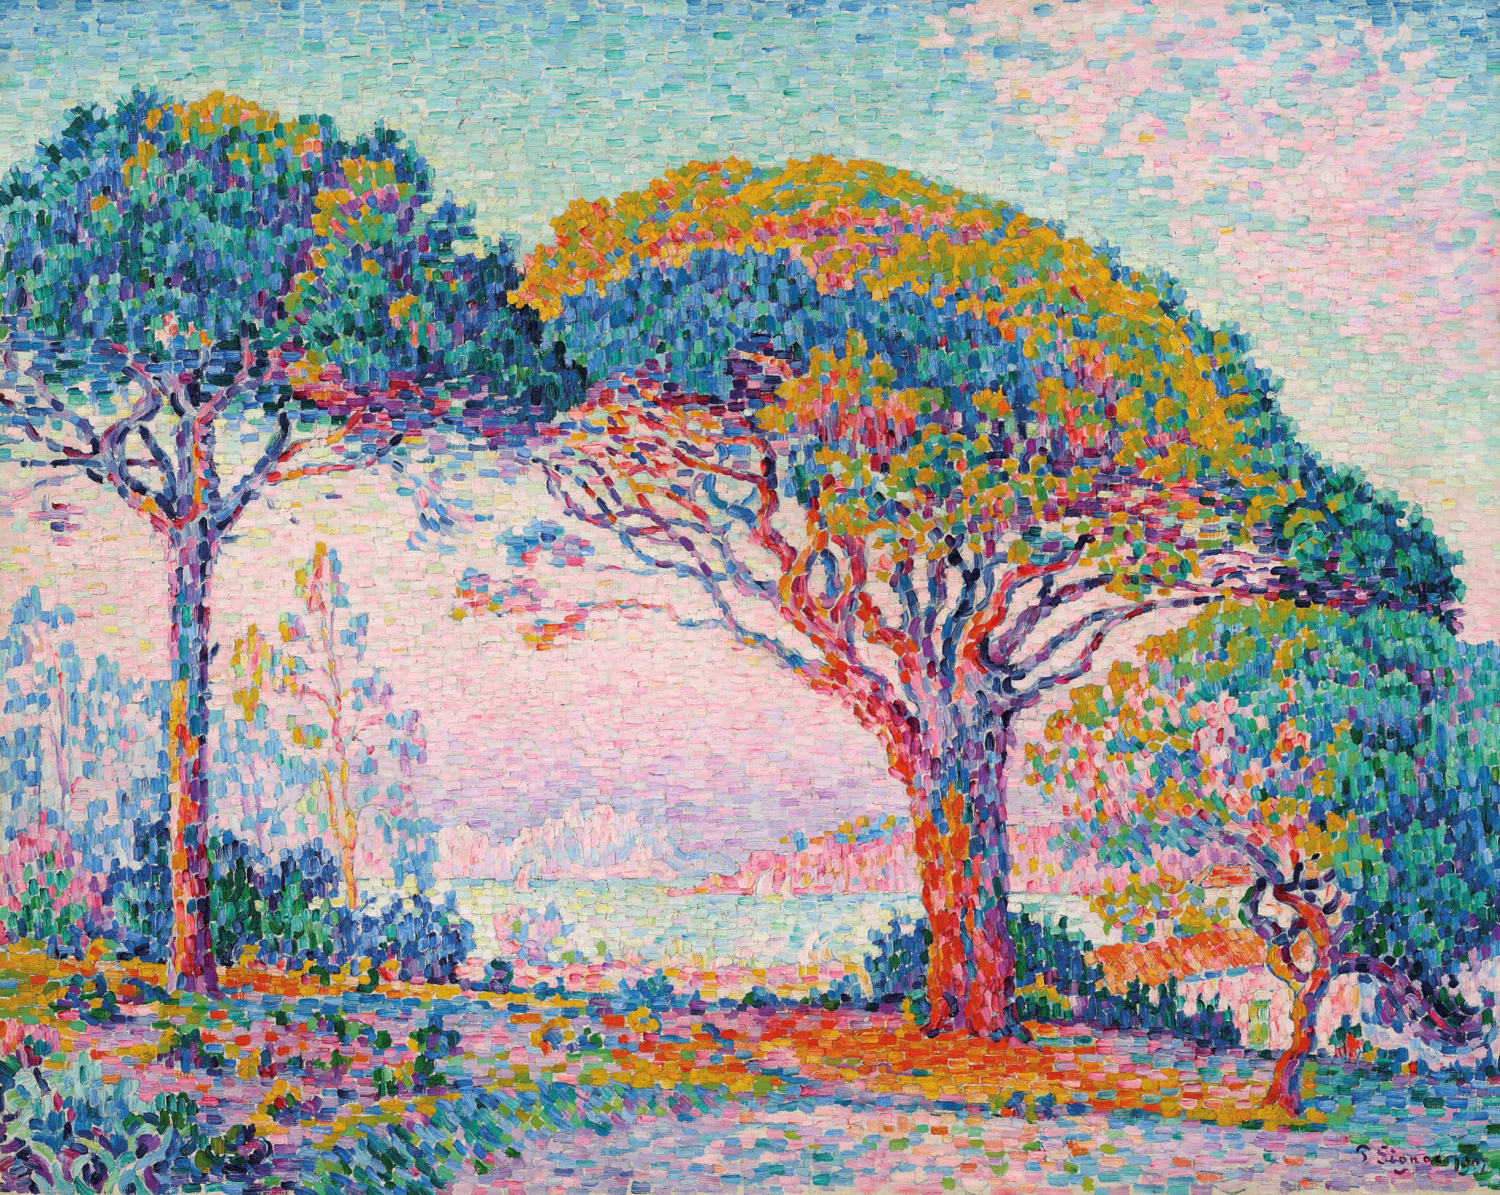 Paul Signac (1863-1935)- La Baie (Saint-Tropez)